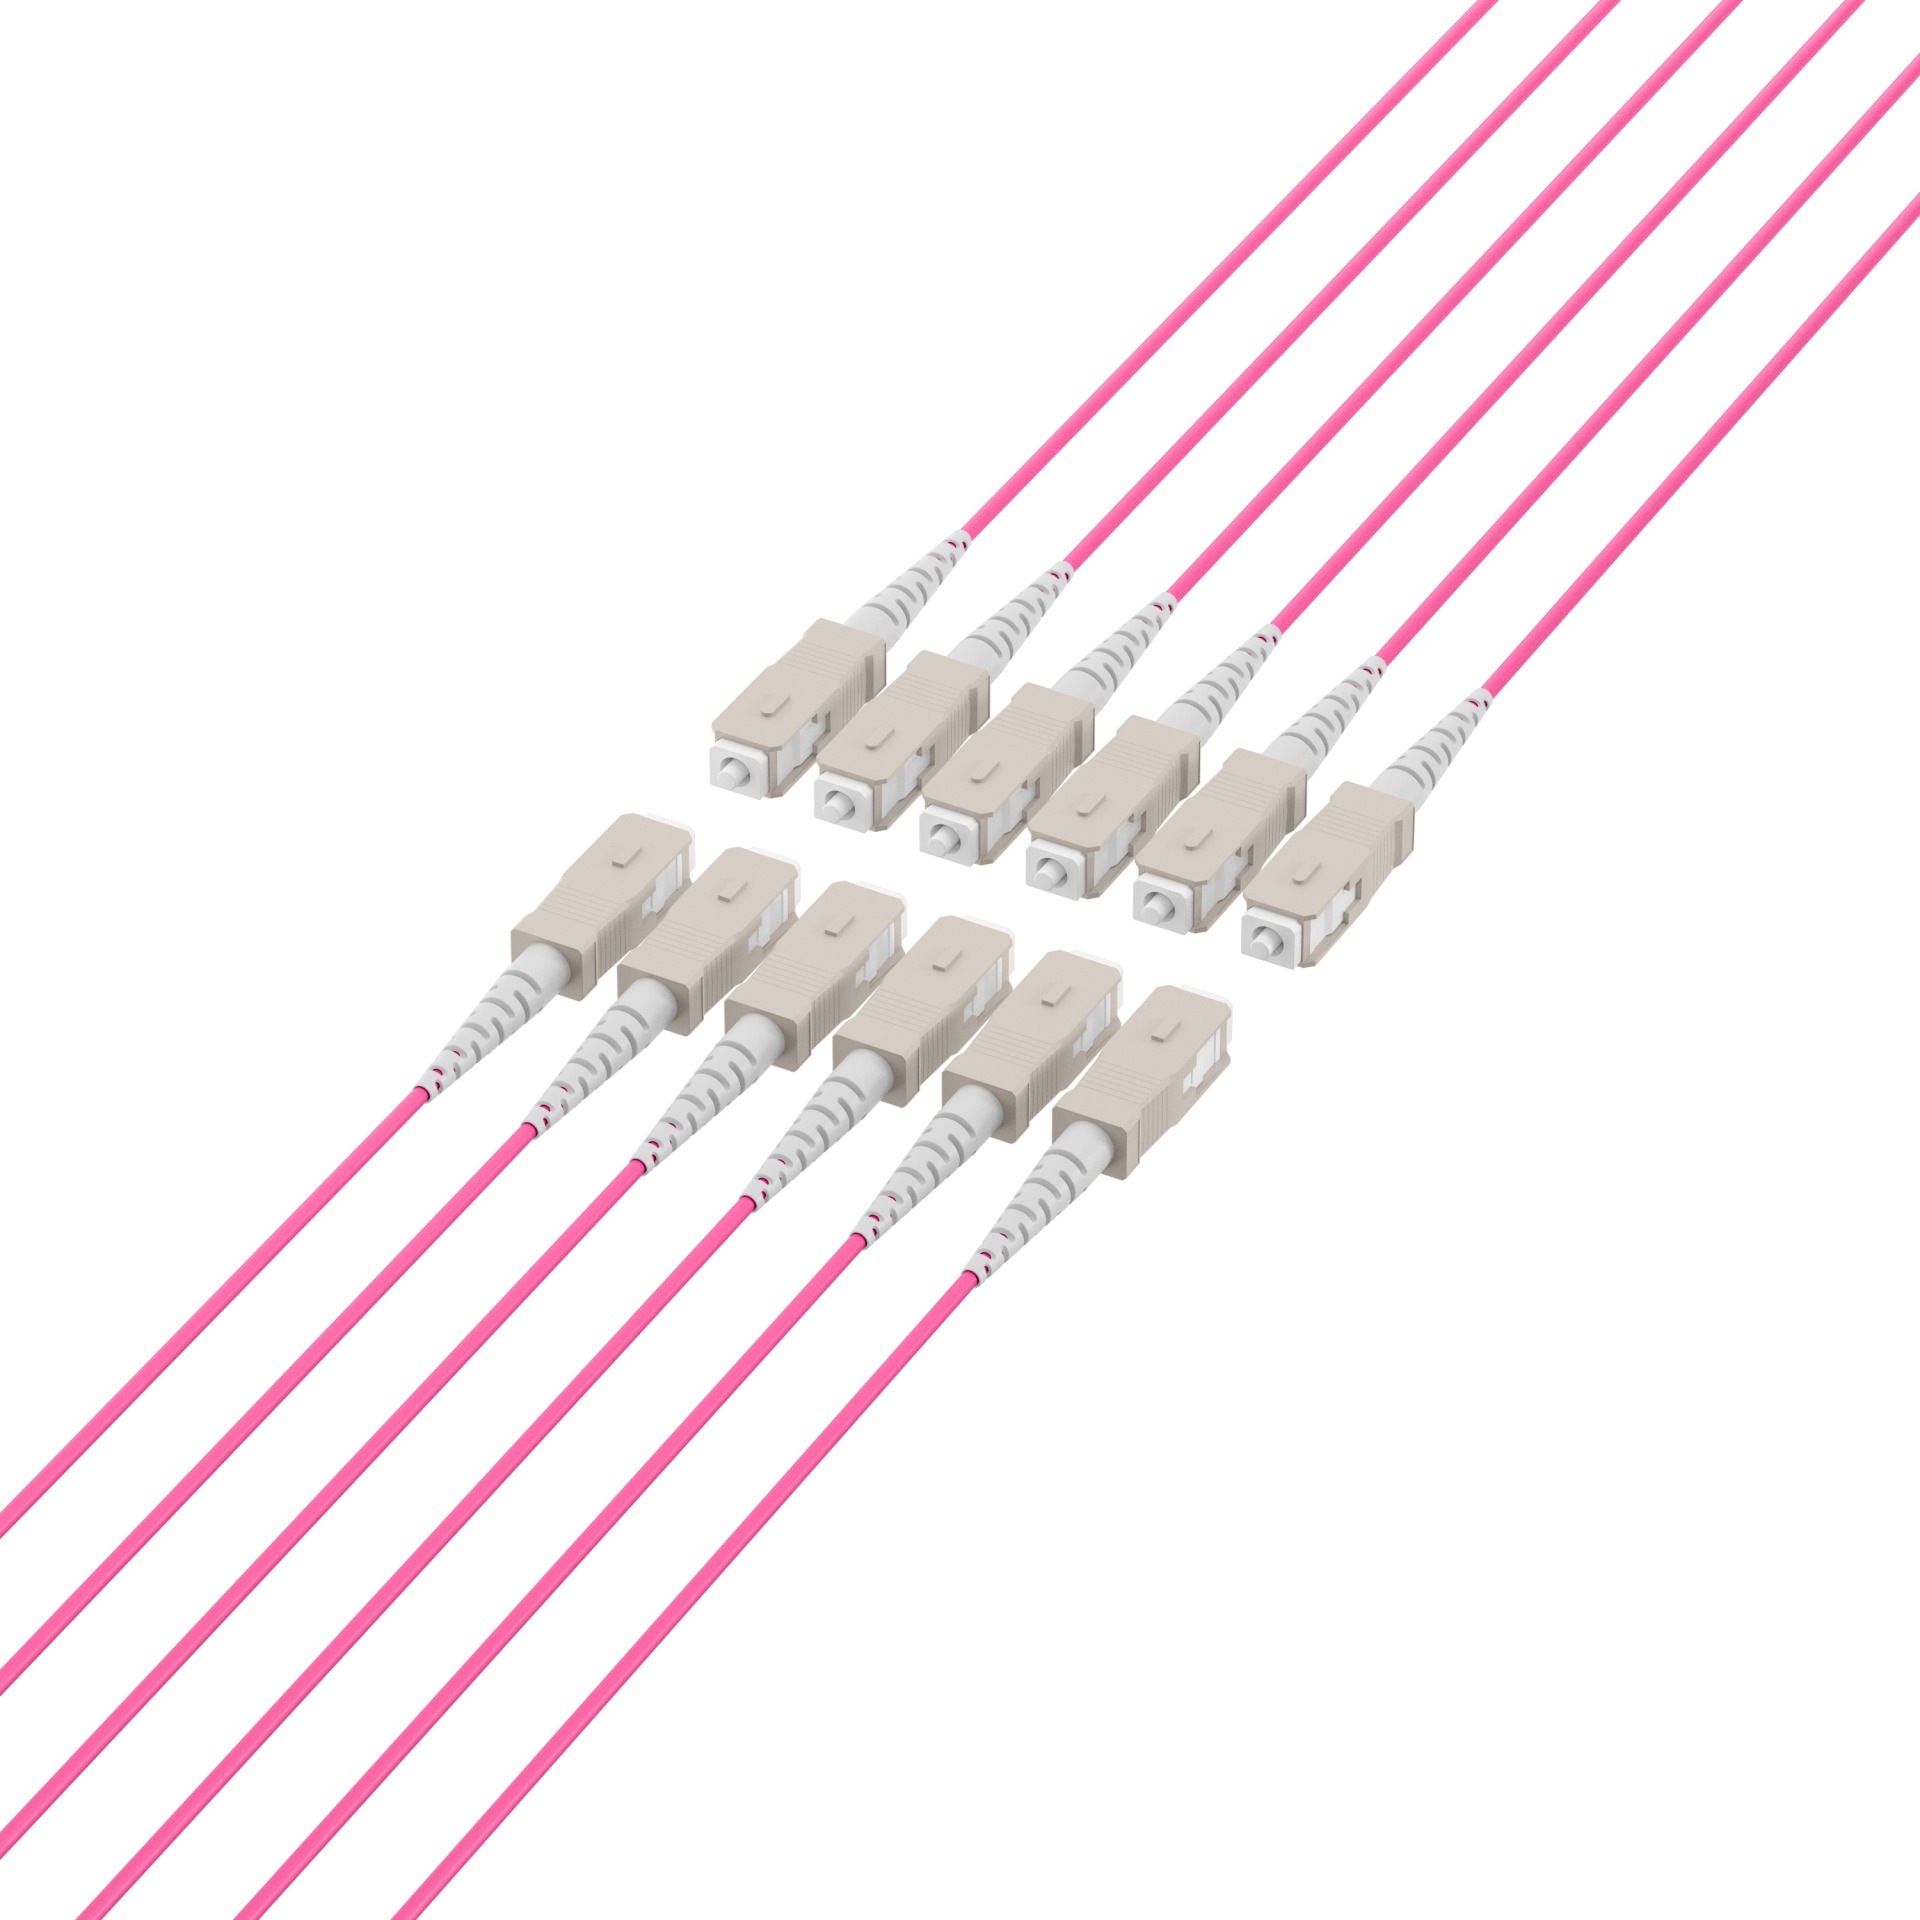 Trunk cable U-DQ(ZN)BH OM4 12G (1x12) SC-SC,160m Dca LSZH